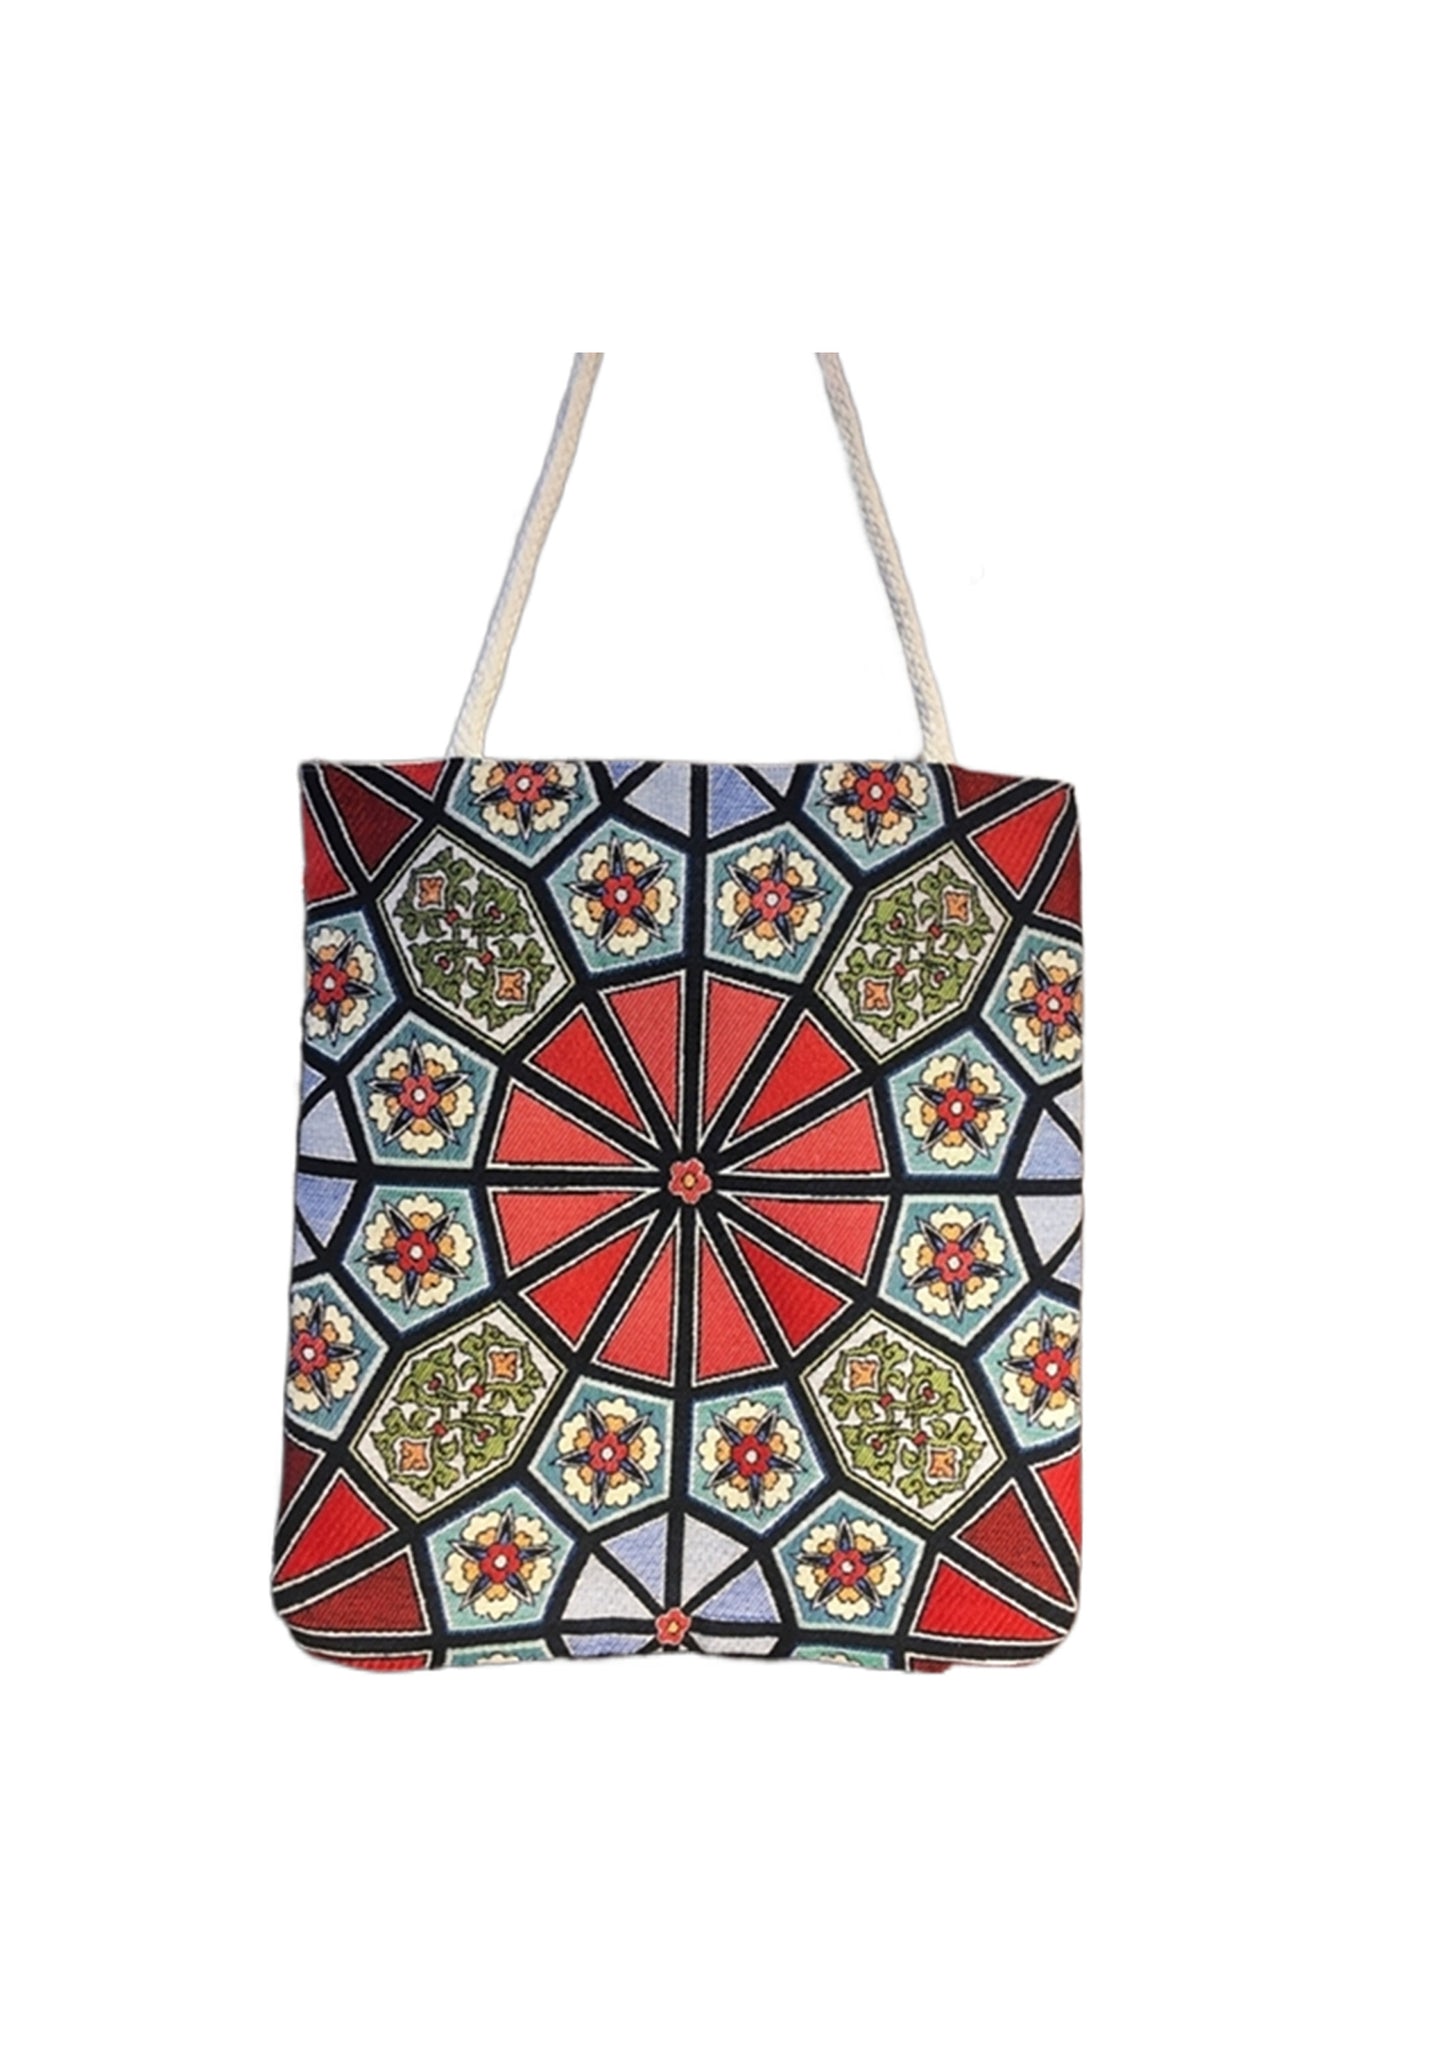 Crystal Vintage Style Ethnic Turkish Boho Shoulder Medium Tote Bag, Kilim Bag, Geometric Bag, Hippie Bag, Shoulder Bag, Purse Bag